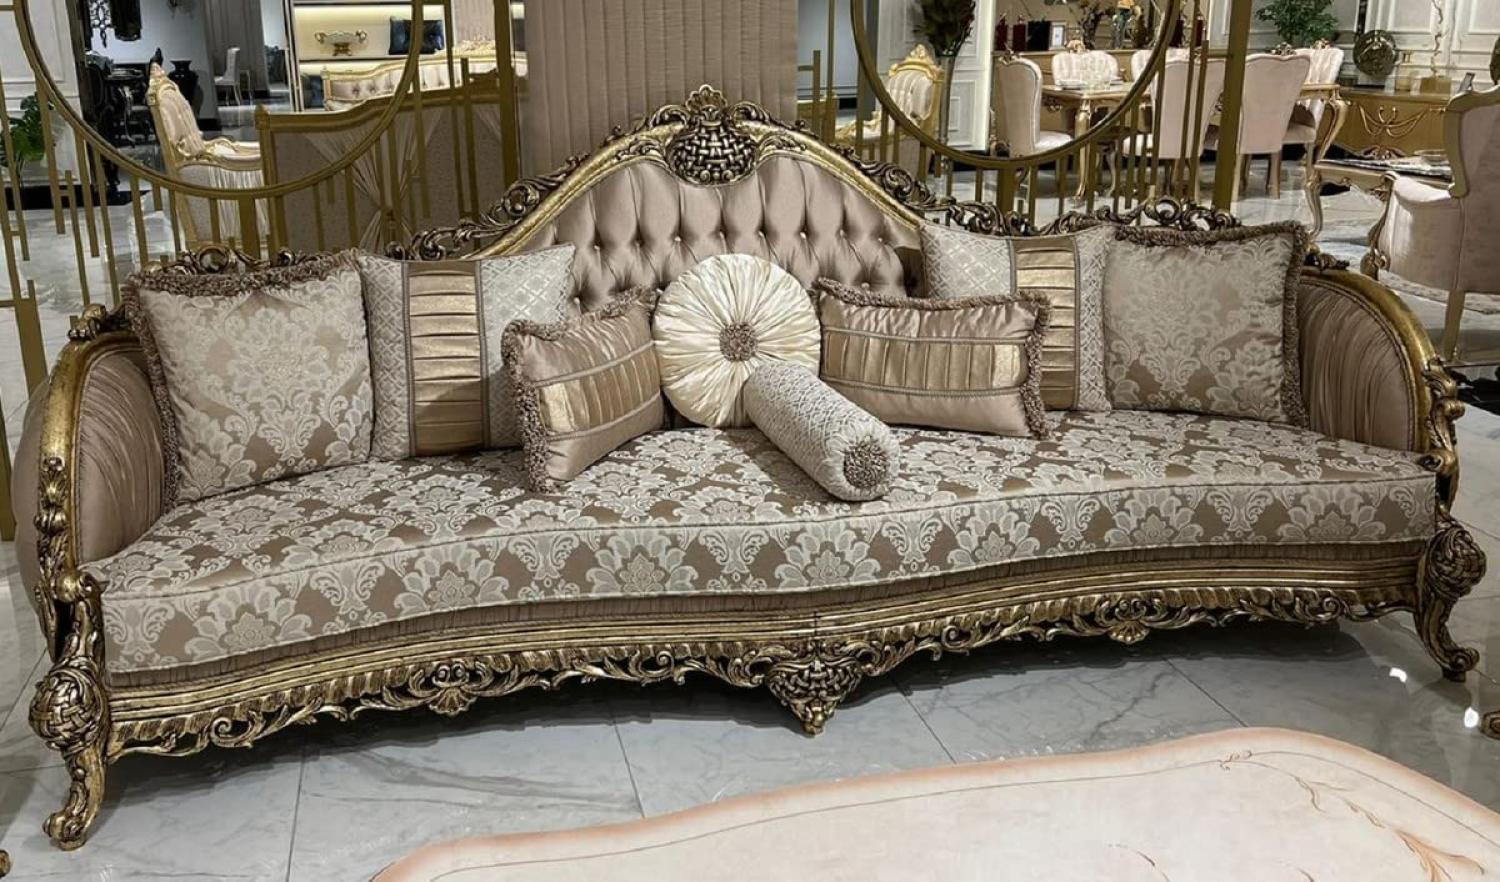 Casa Padrino Luxus Barock Sofa Braun / Weiß / Gold - Handgefertigtes Wohnzimmer Sofa mit elegantem Muster und dekorativen Kissen - Prunkvolle Wohnzimmer Möbel im Barockstil Bild 1